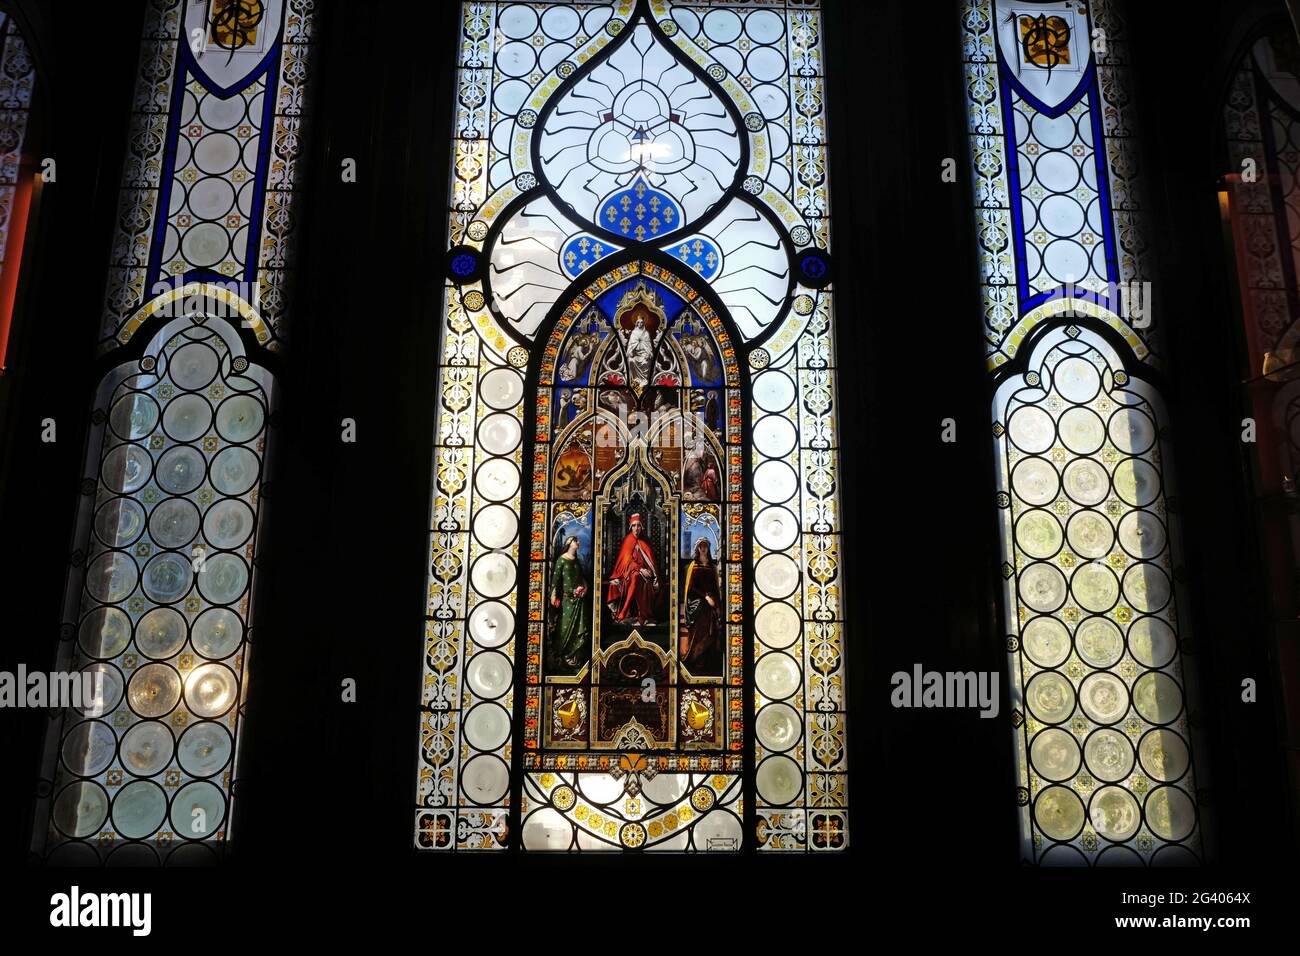 Dipinti religiosi in vetro presso la casa museo Poldi Pezzoli, sul palazzo storico, nel centro di Milano. Foto Stock